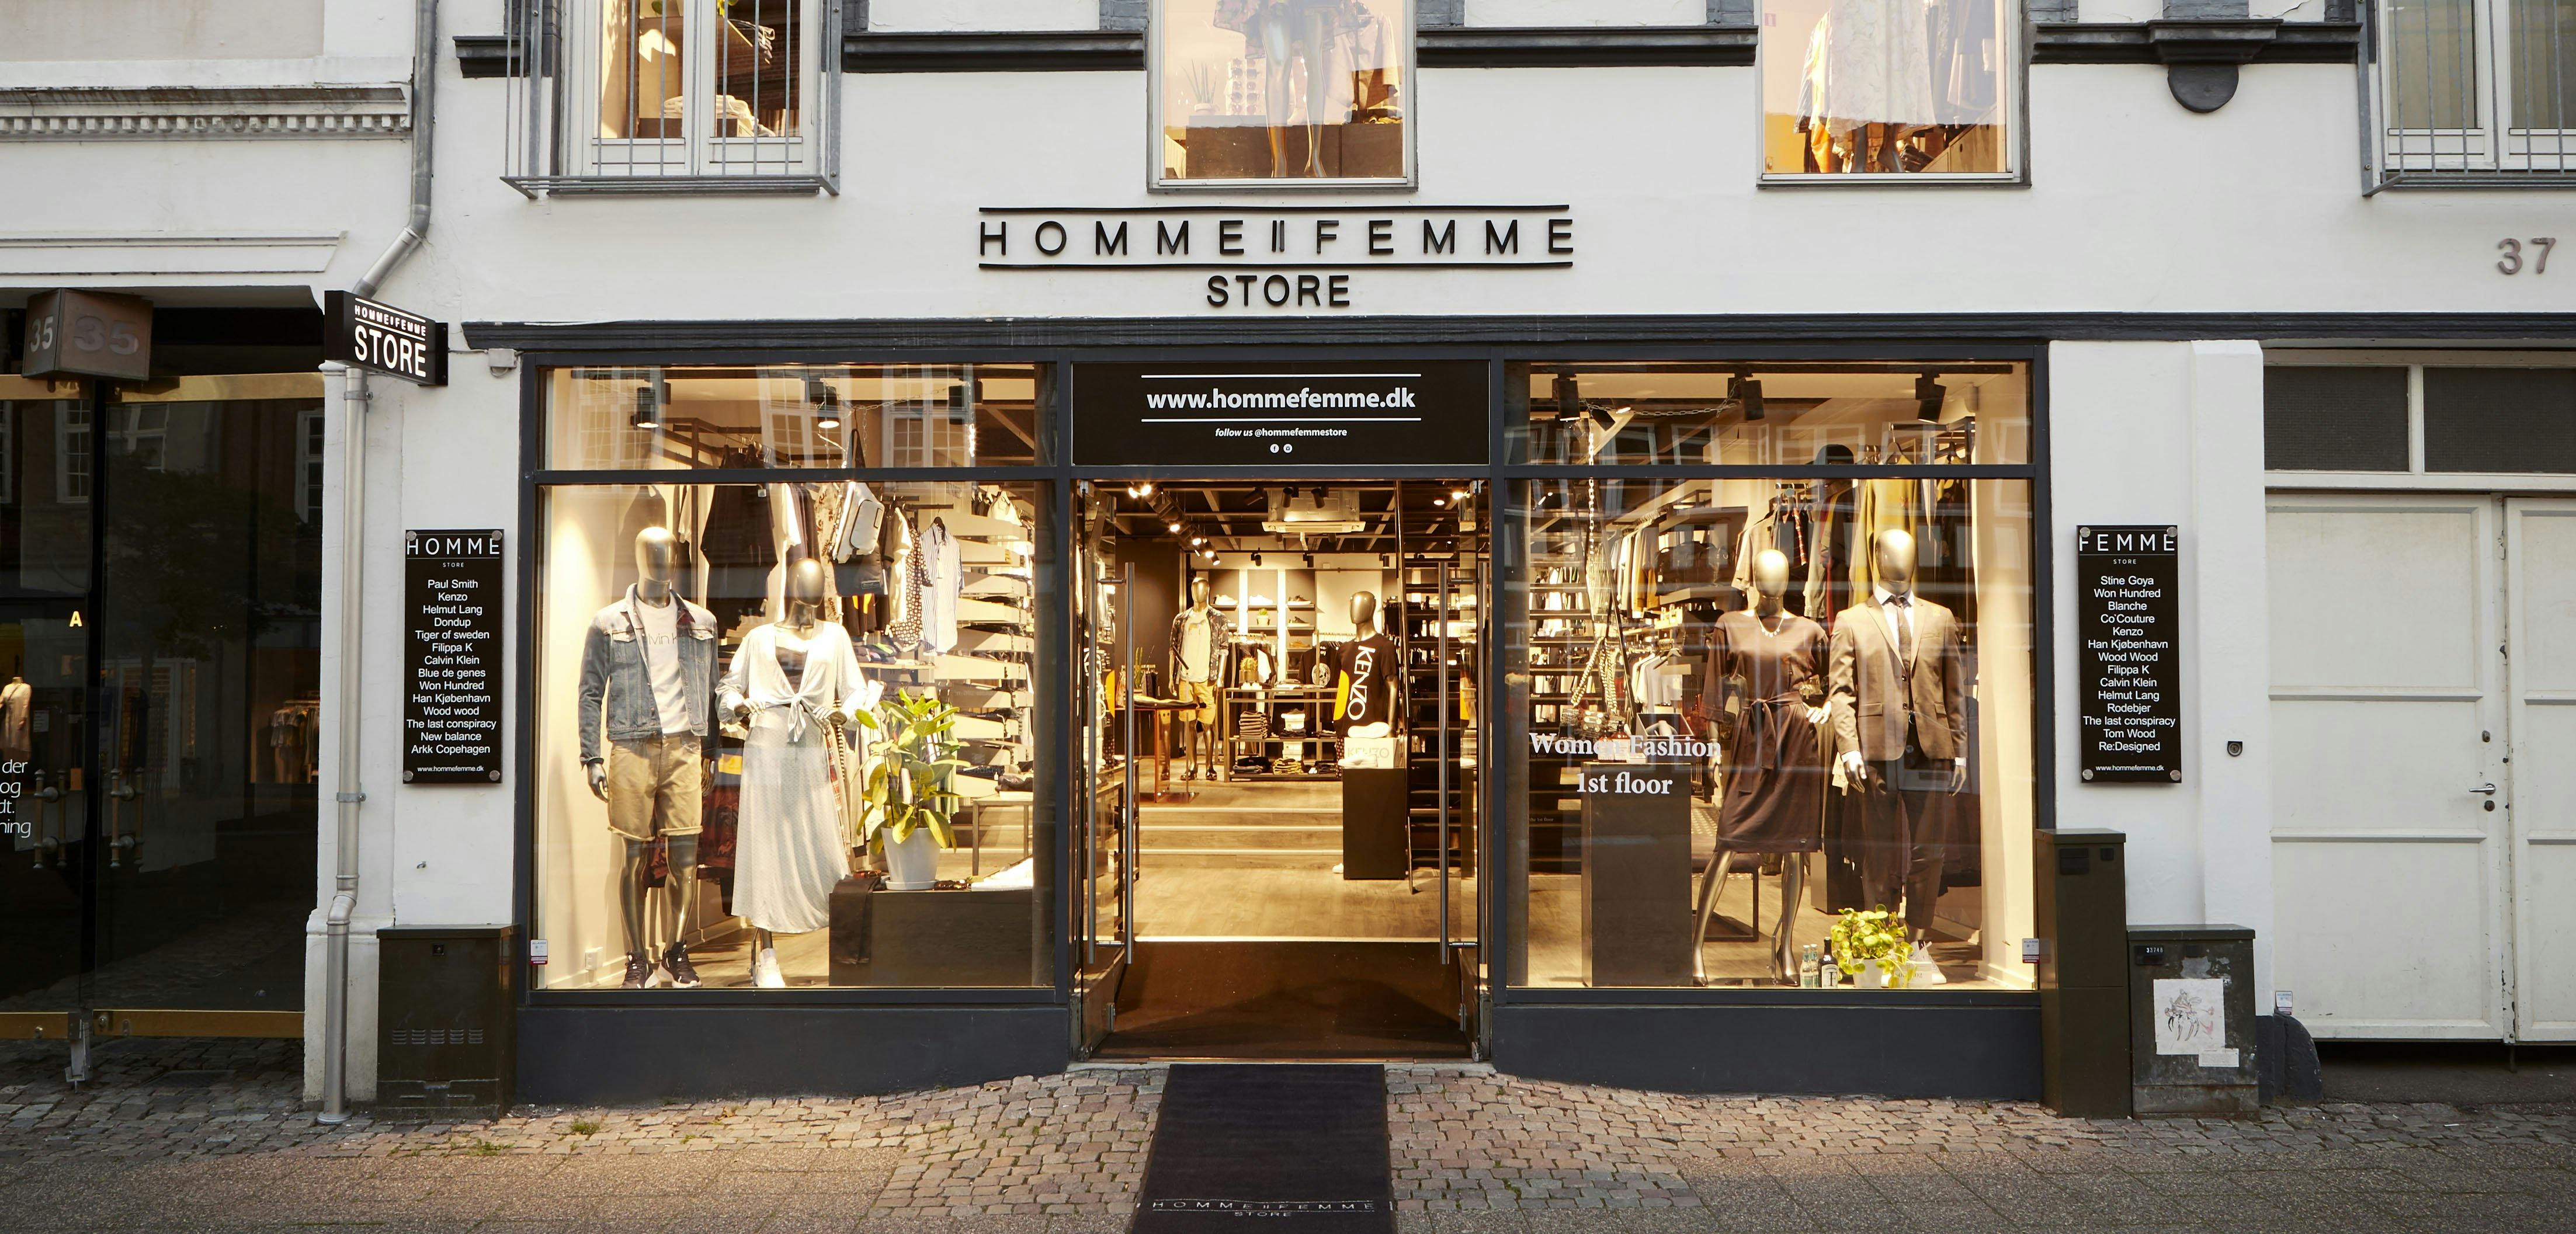 absolutte hotteste tøjbutik i Horsens sælges - Virksomhedsbørs